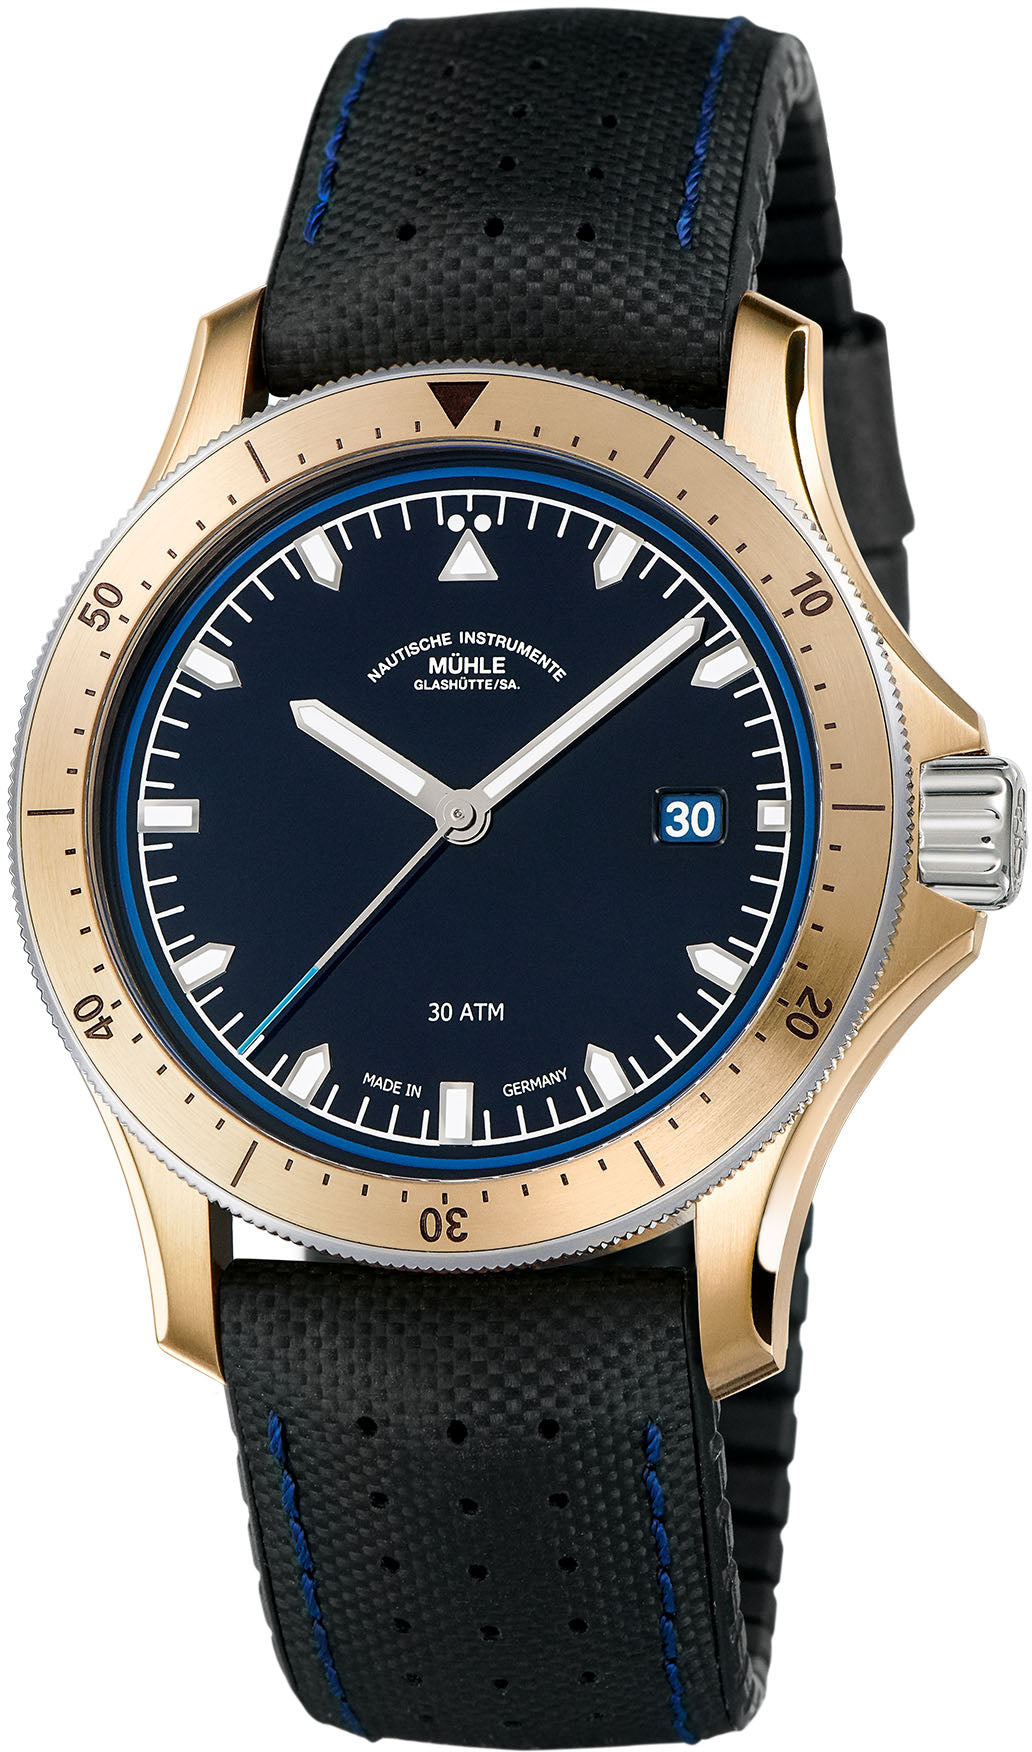 Mühle Glashütte Seebataillon GMT M1-28-62-KB - Exquisite Timepieces